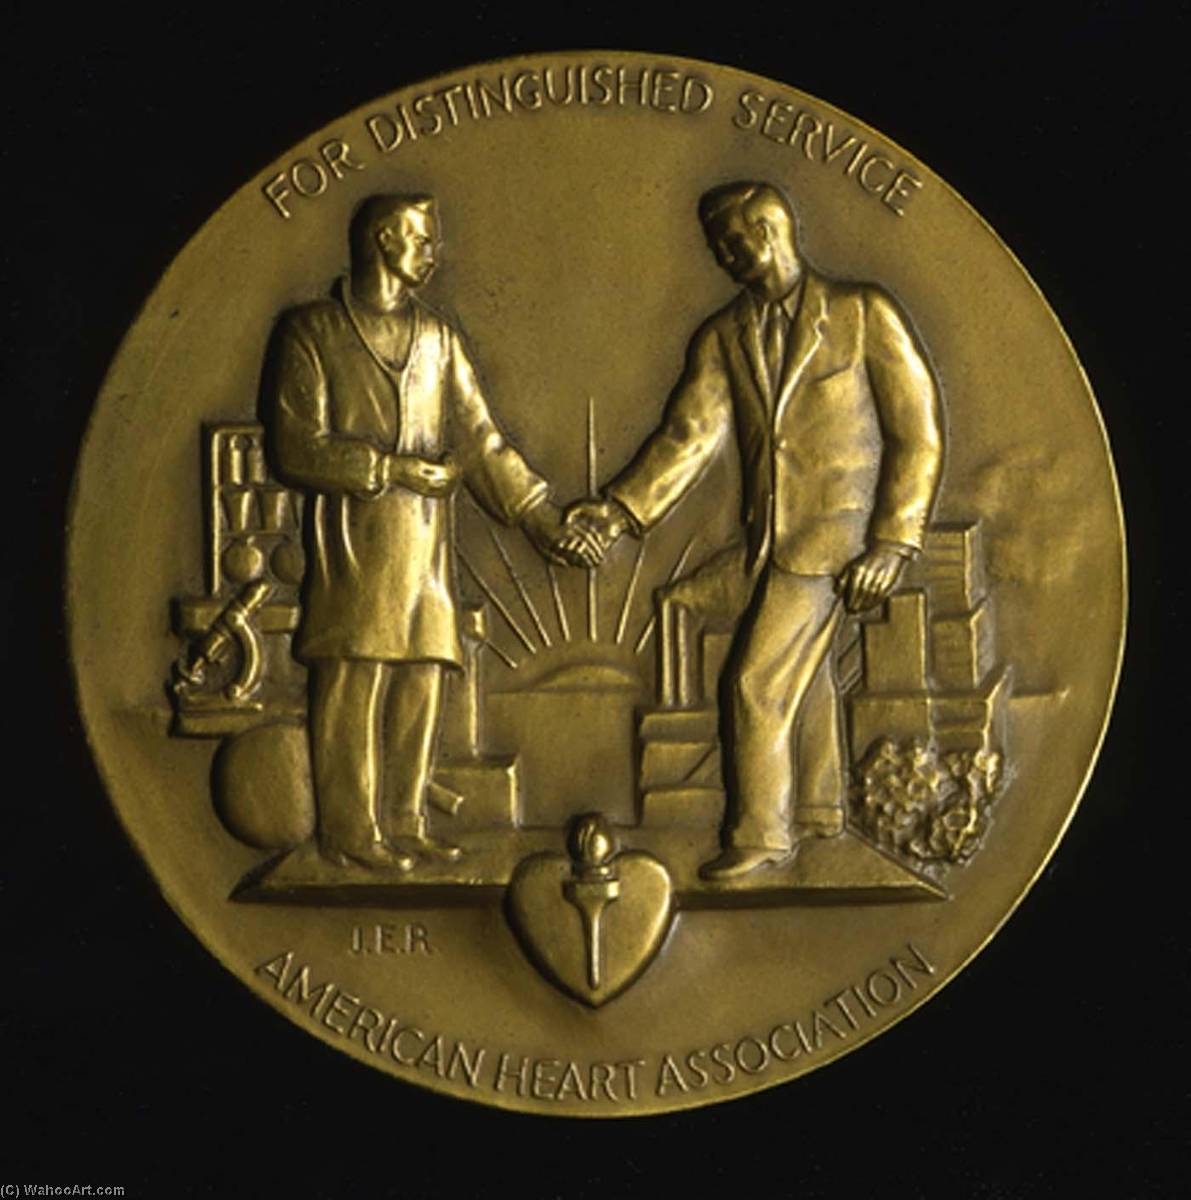 Joseph-Emile-Renier-American-Heart-Association-Medal.jpg